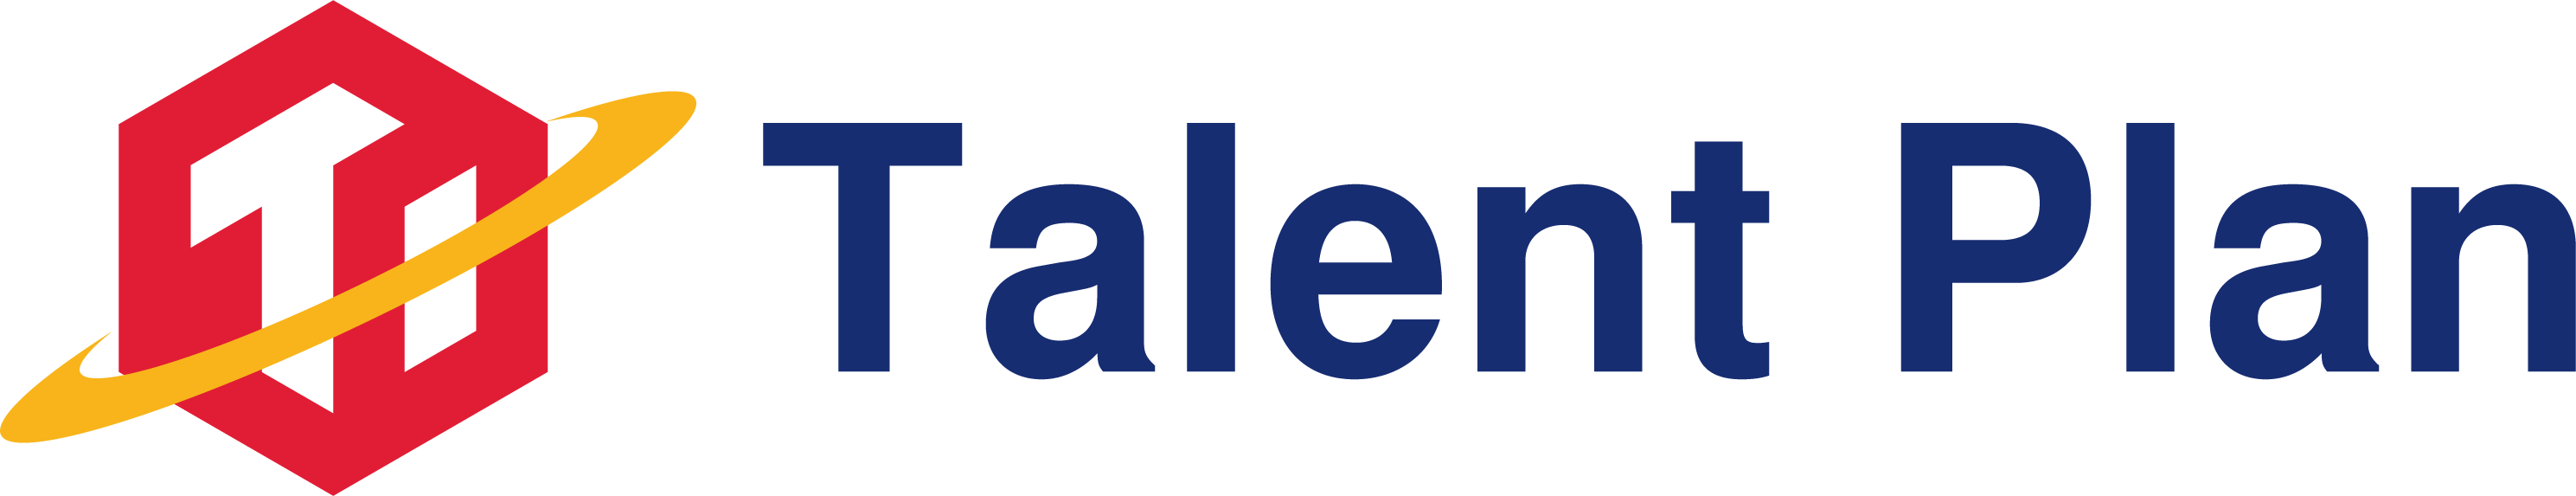 talent-plan-logo.png